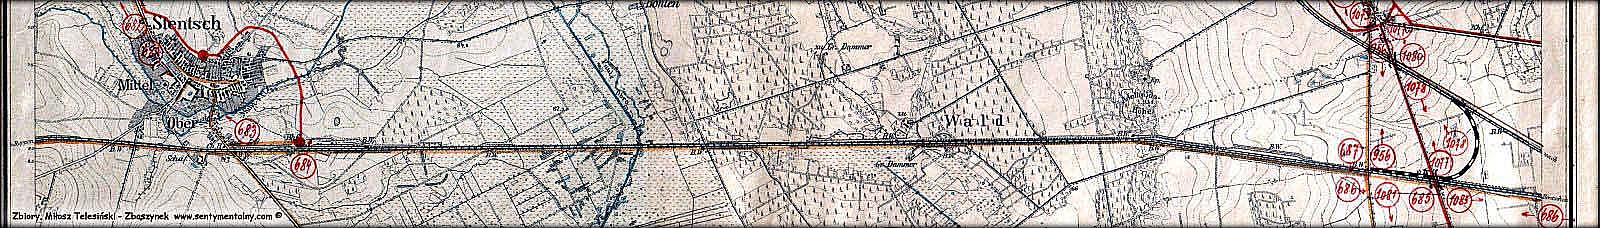 Planowanie budowy nowego dworca granicznego, jaki okazał się Zbąszynek. mapka z 1902 roku, będąca podsłużbową podkładką do tymczasowego projektowania.